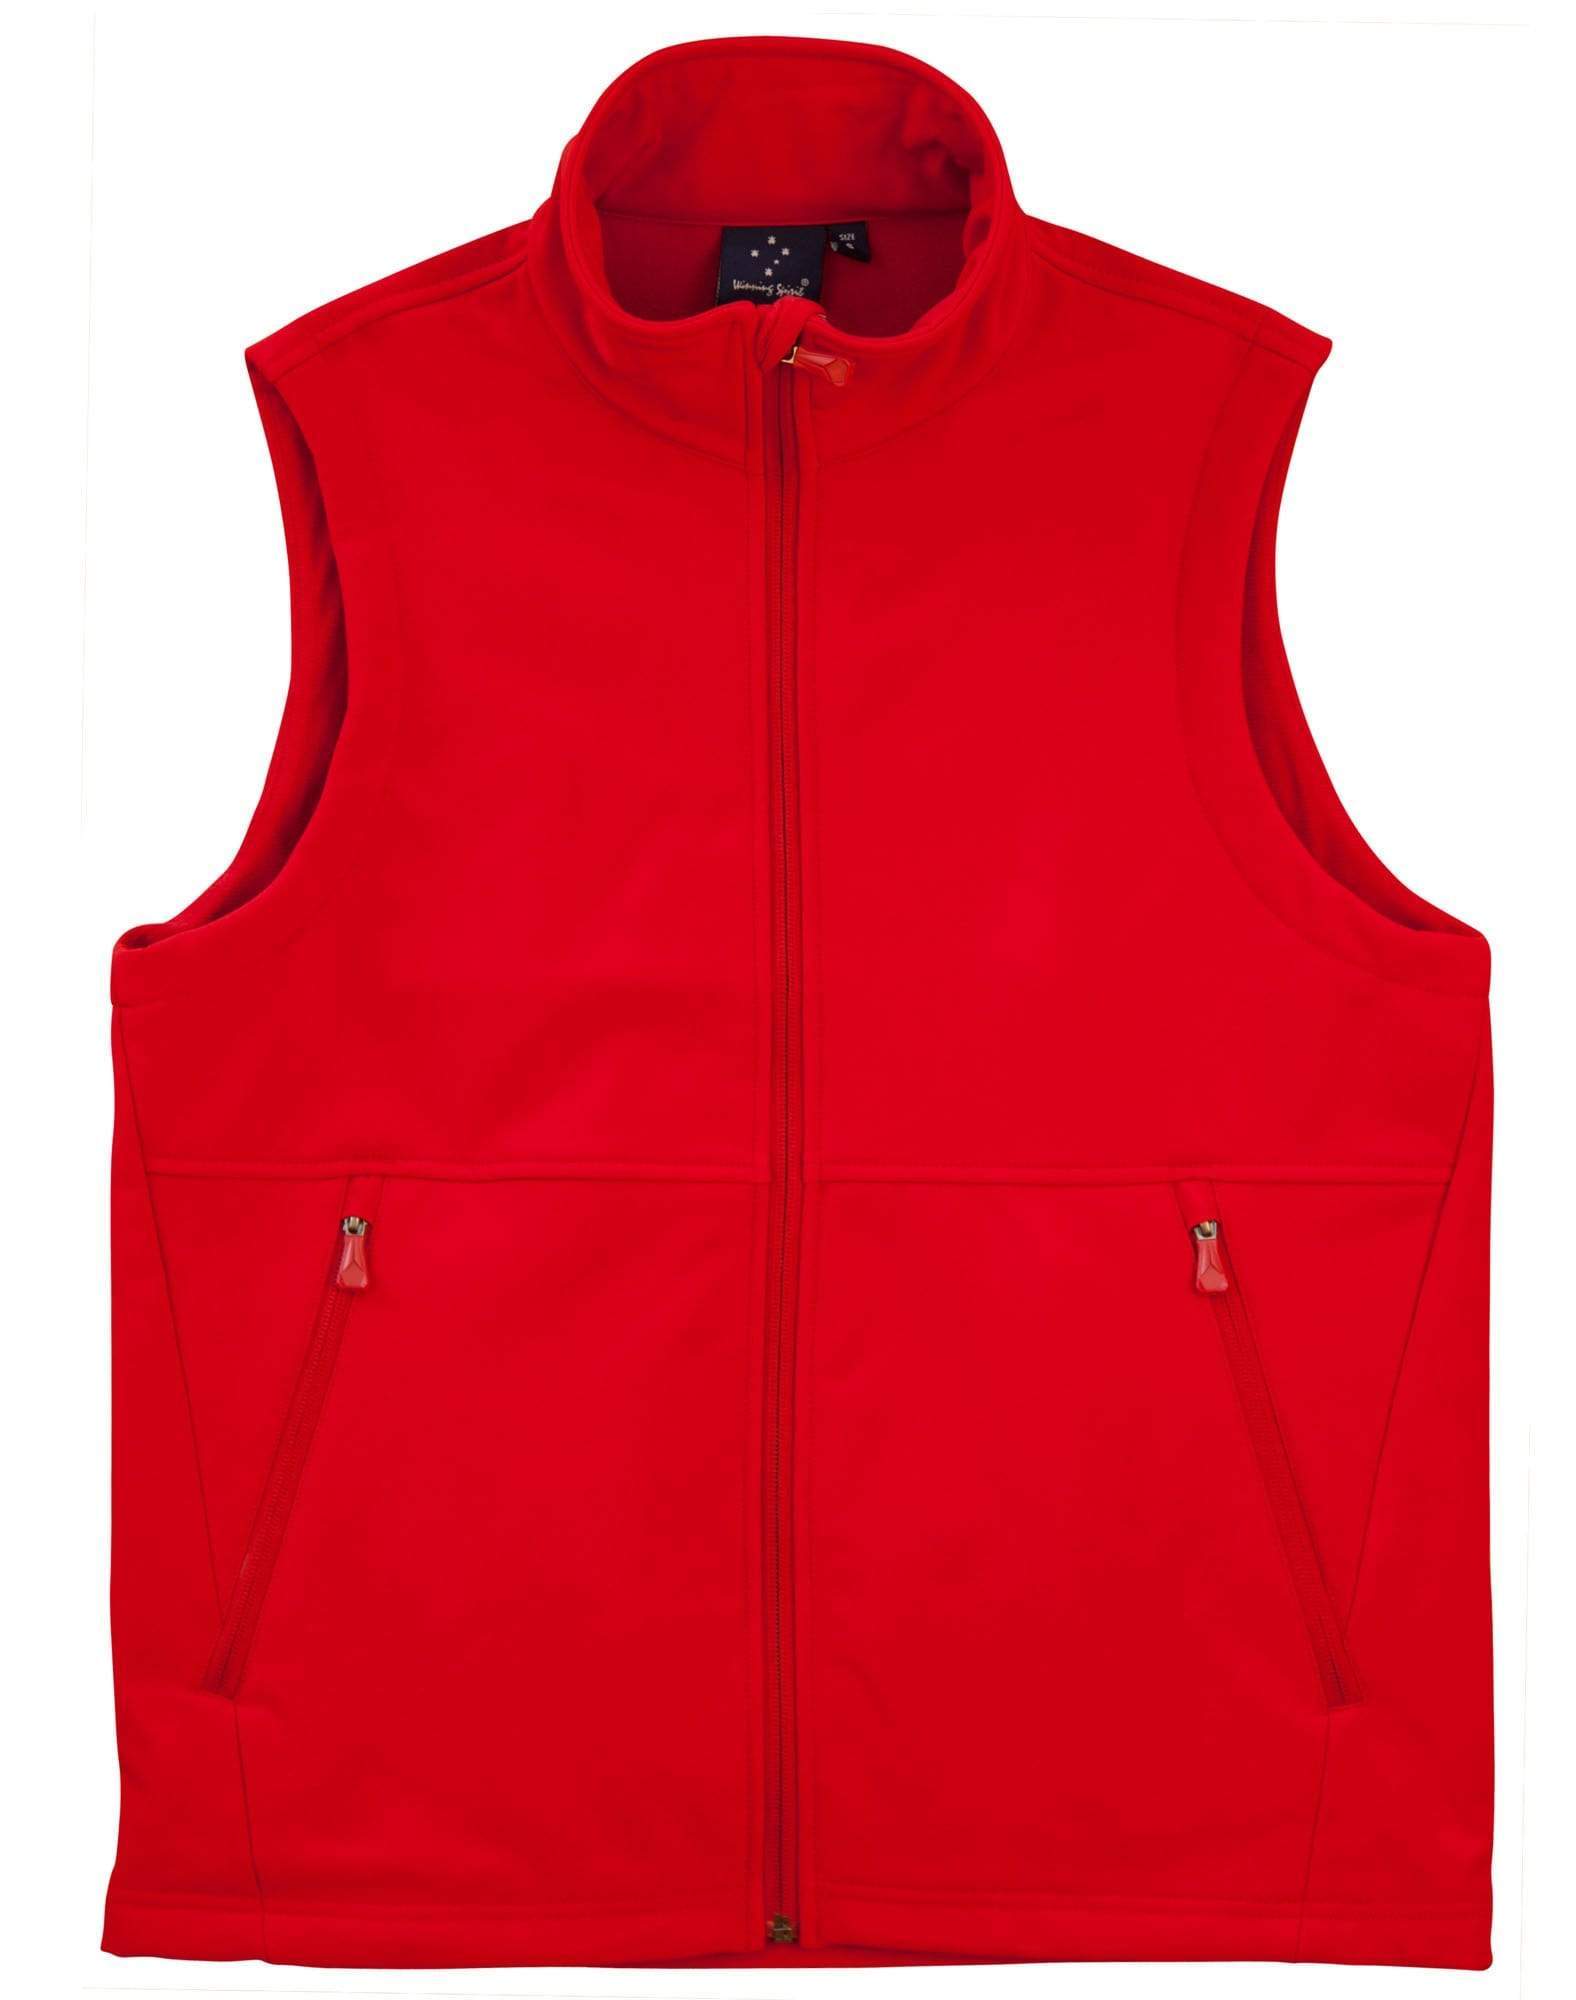 WINNING SPIRIT Softshell Vest Men's JK25 Casual Wear Winning Spirit Red S 